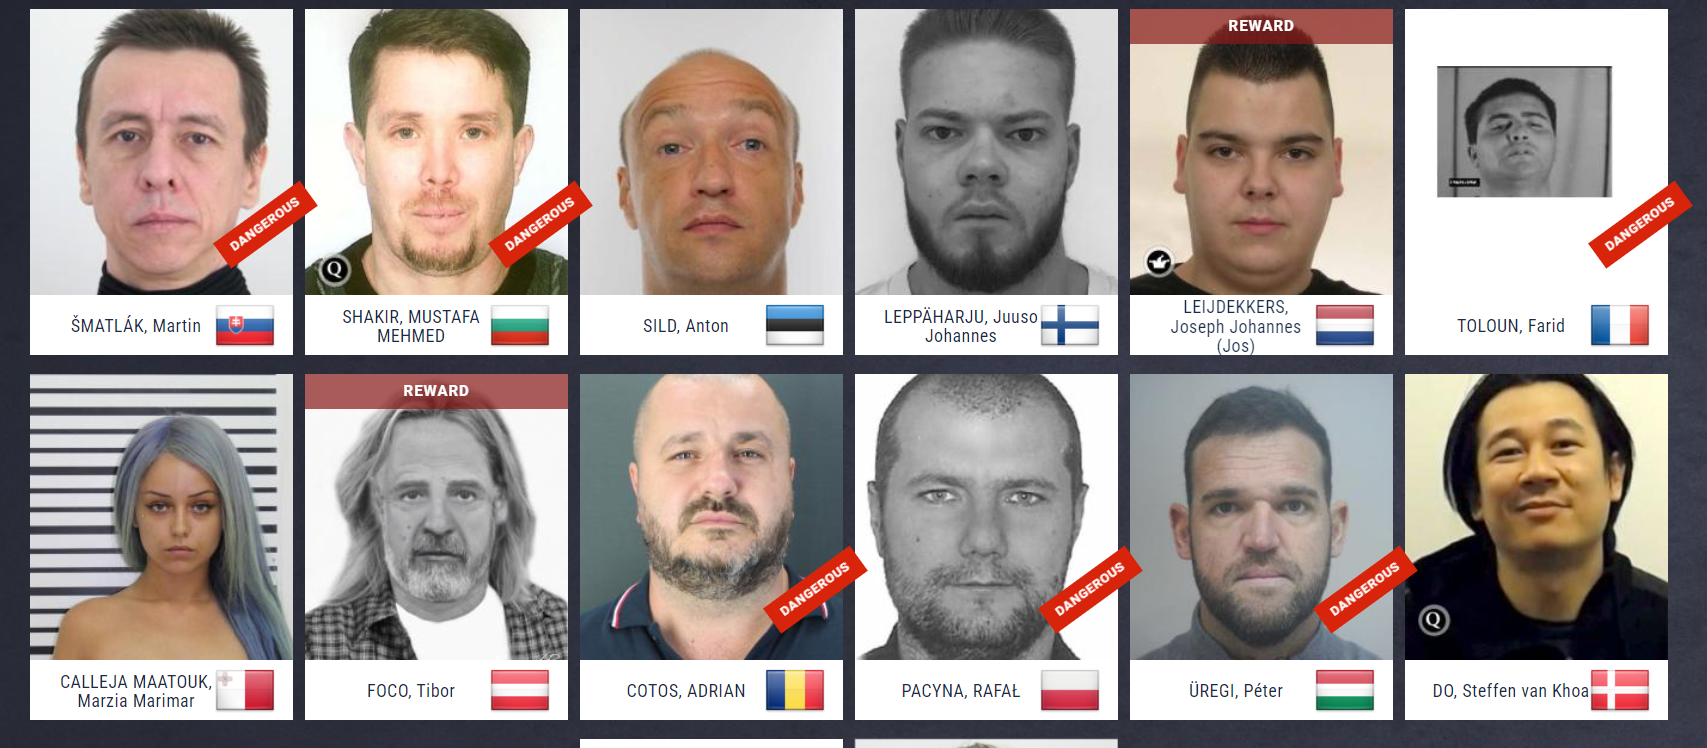 Három magyar fért be az Europol legkeresettebb bűnözői közé